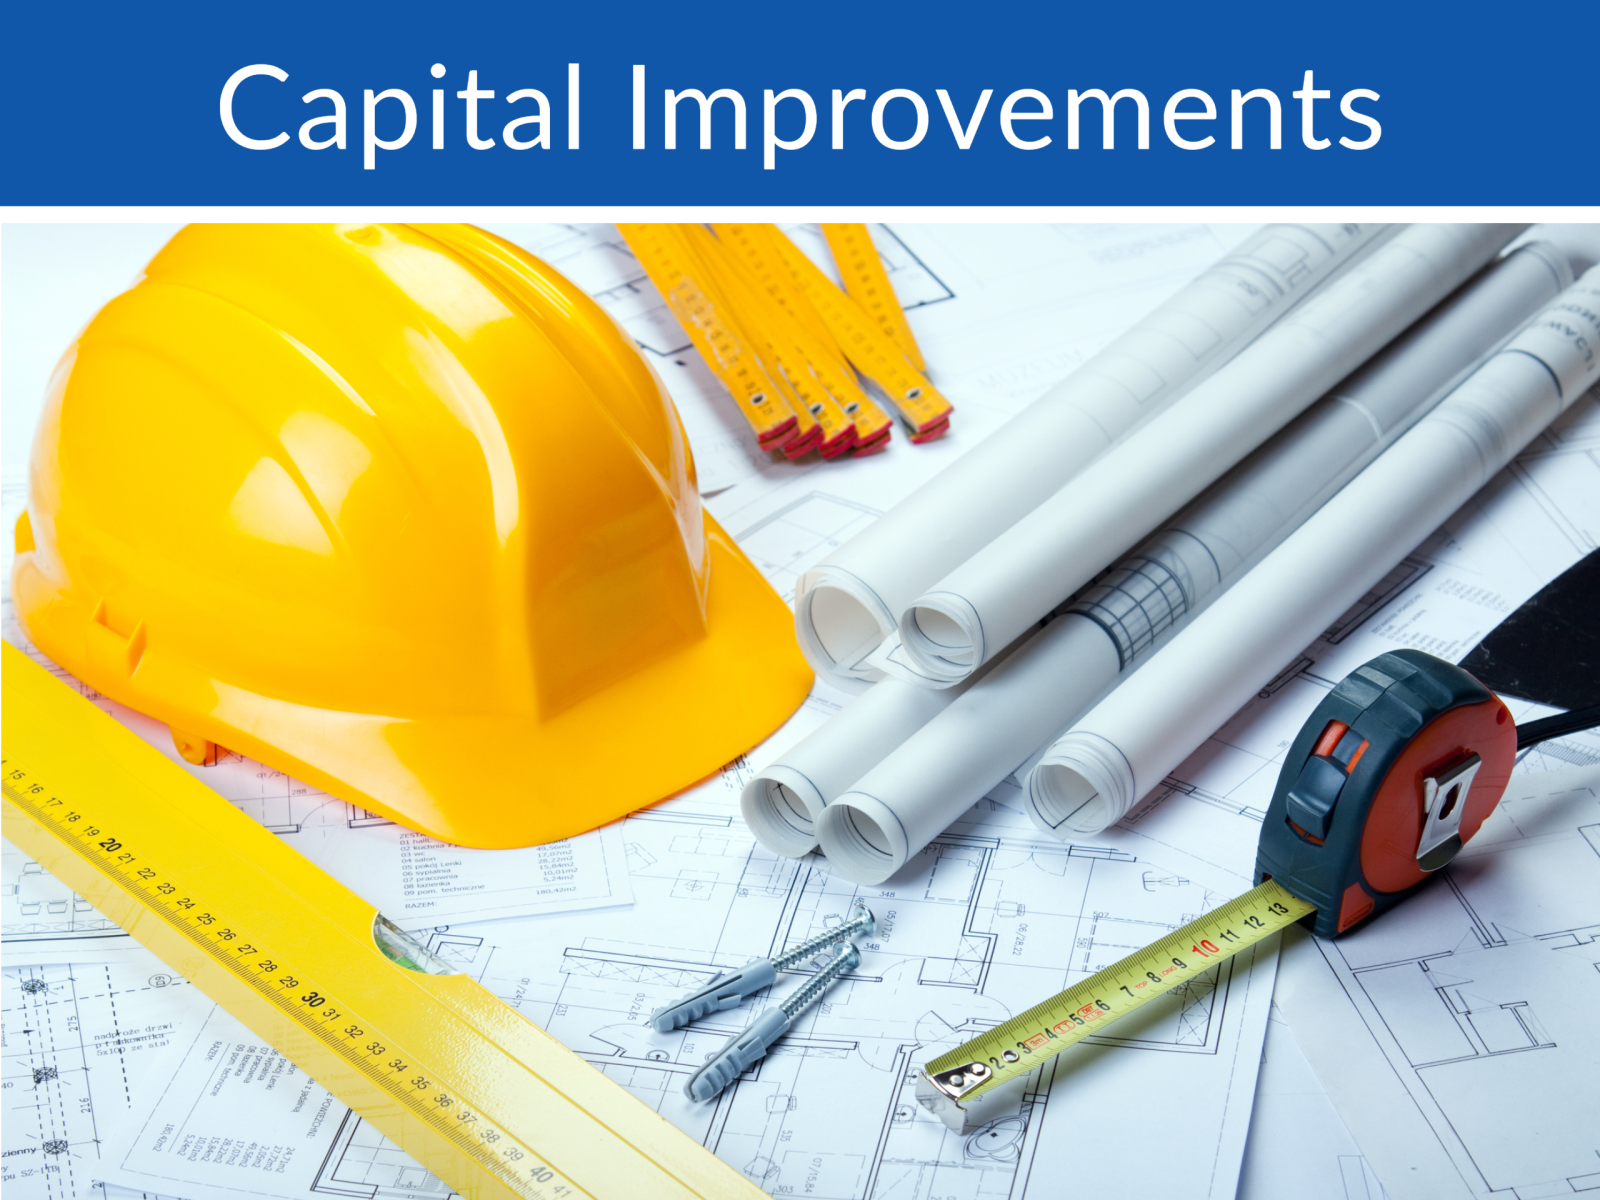 Capital Improvements